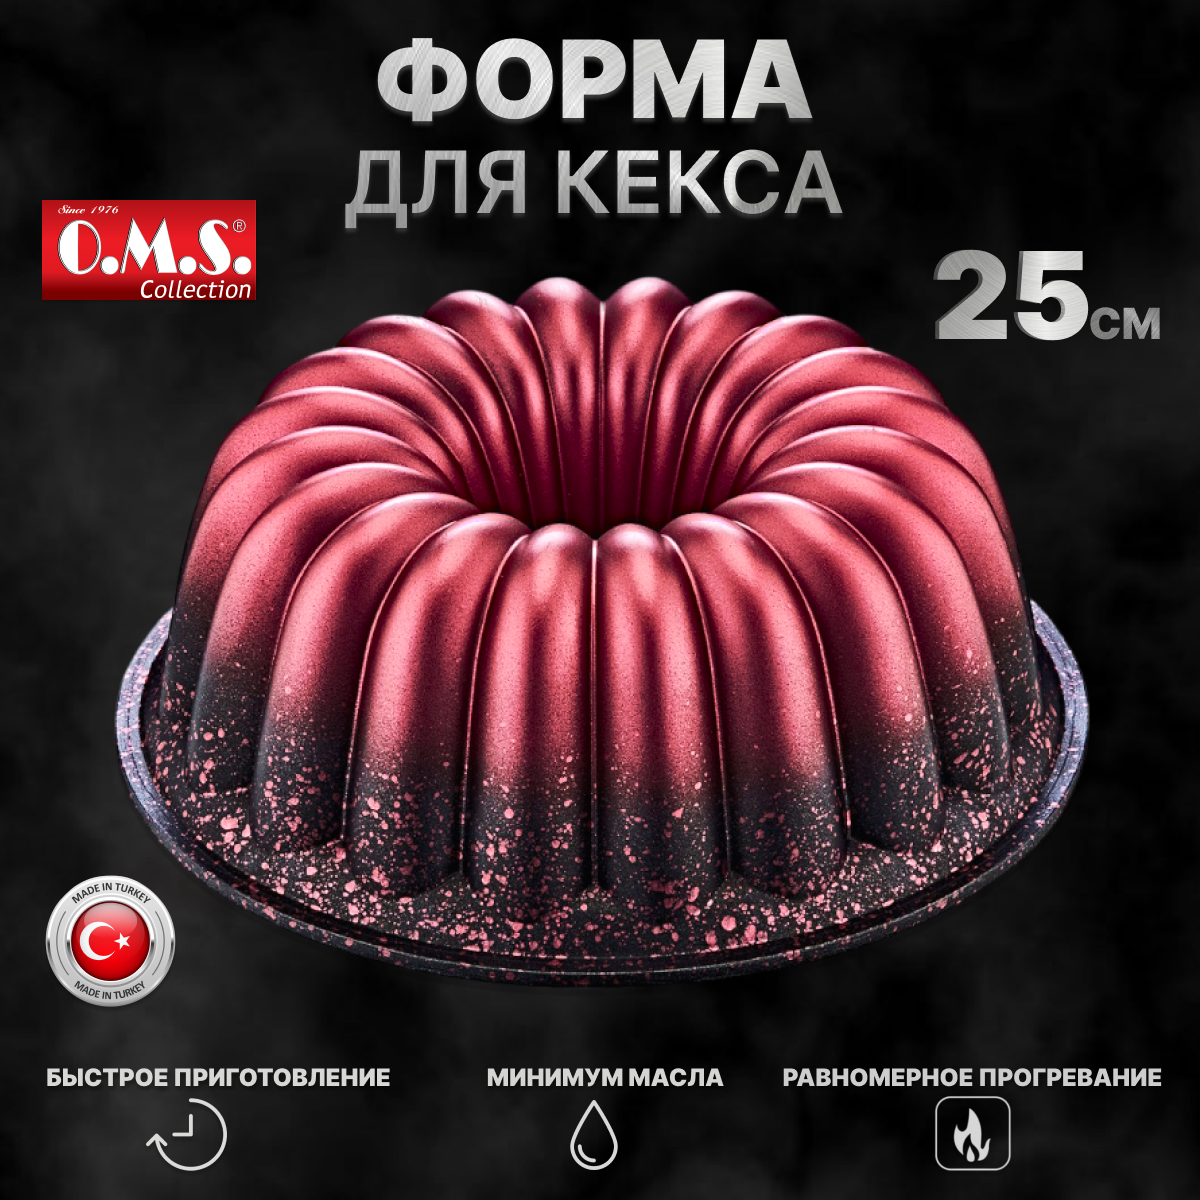 Форма для выпечки и запекания кексов с антипригарным покрытием. O.M.S. Collection. Диаметр 25 см. Цвет: красный.